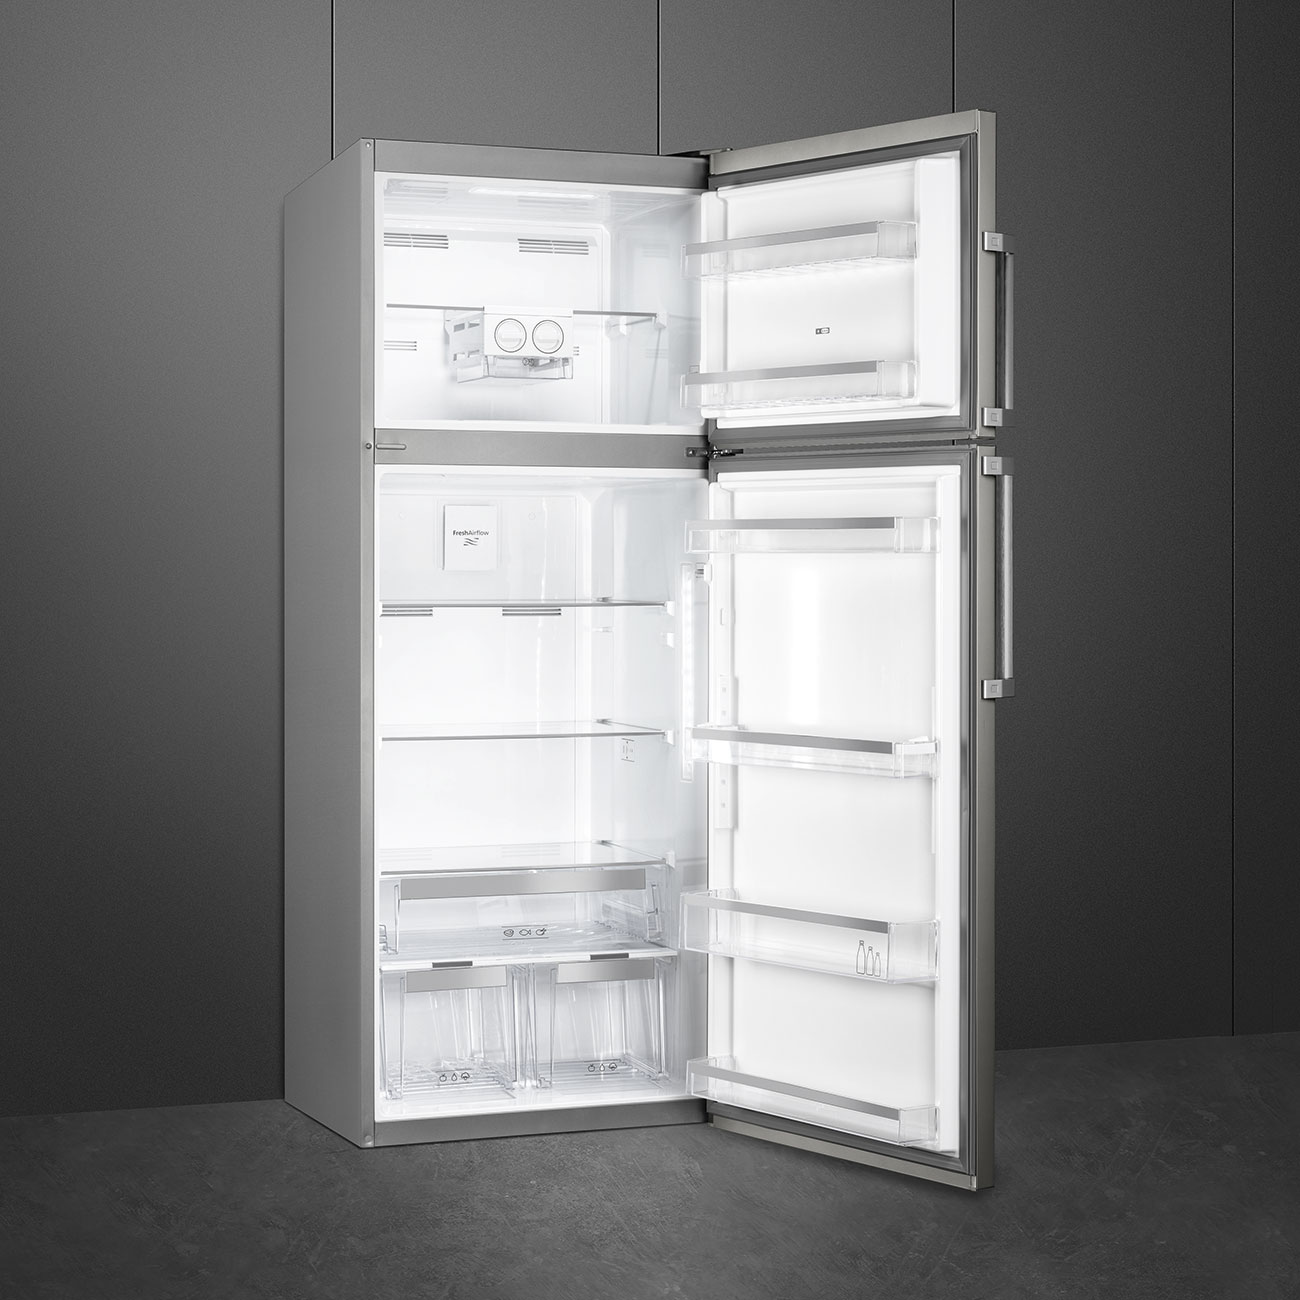 Double Door Free standing refrigerator - Smeg_2